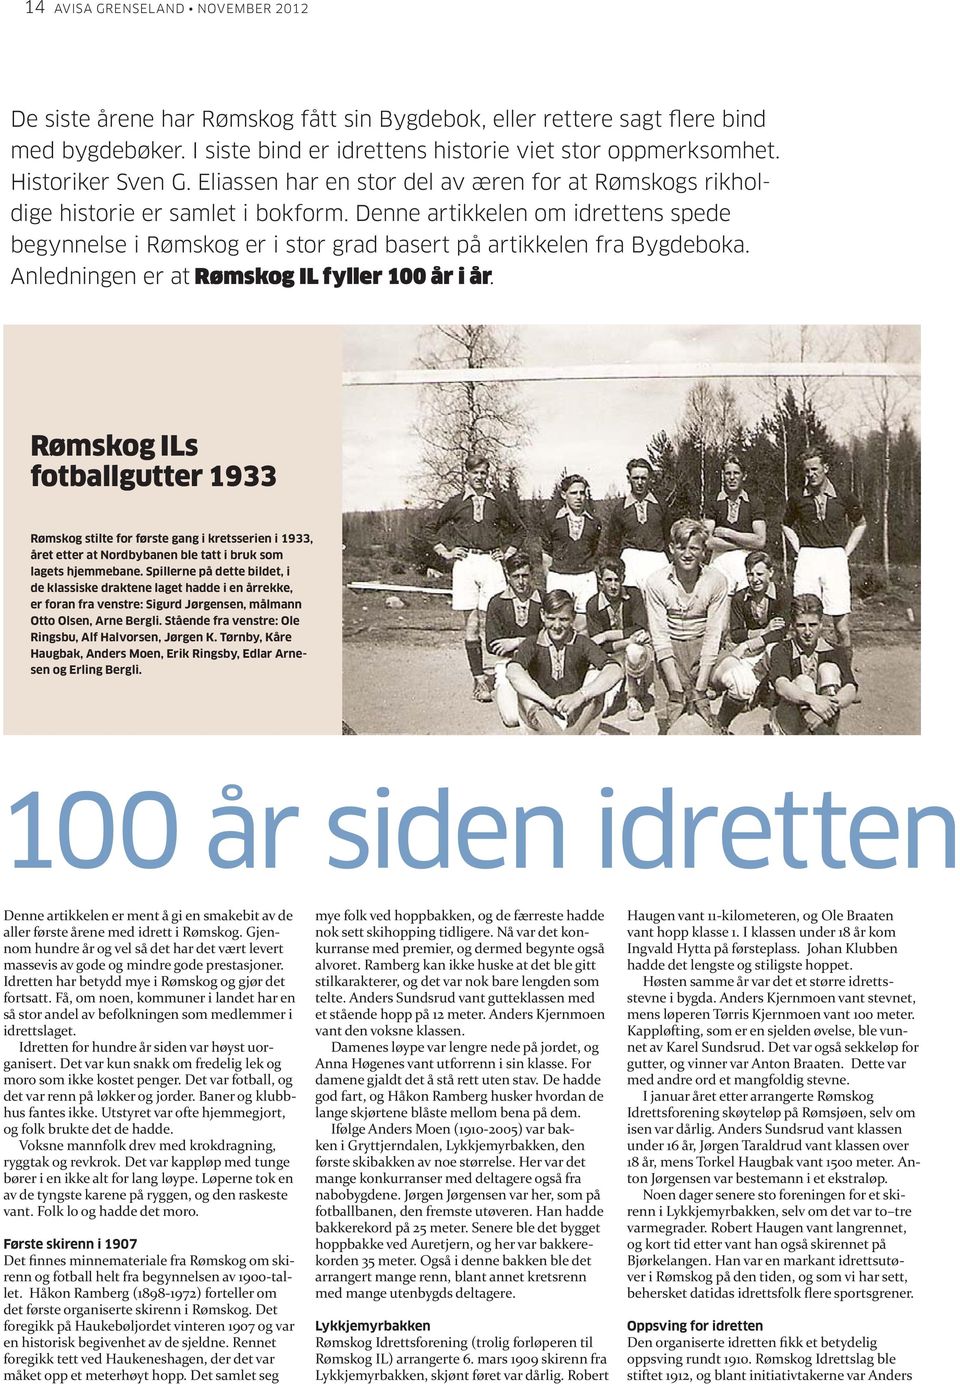 Denne artikkelen om idrettens spede begynnelse i Rømskog er i stor grad basert på artikkelen fra Bygdeboka. Anledningen er at Rømskog IL fyller 100 år i år.